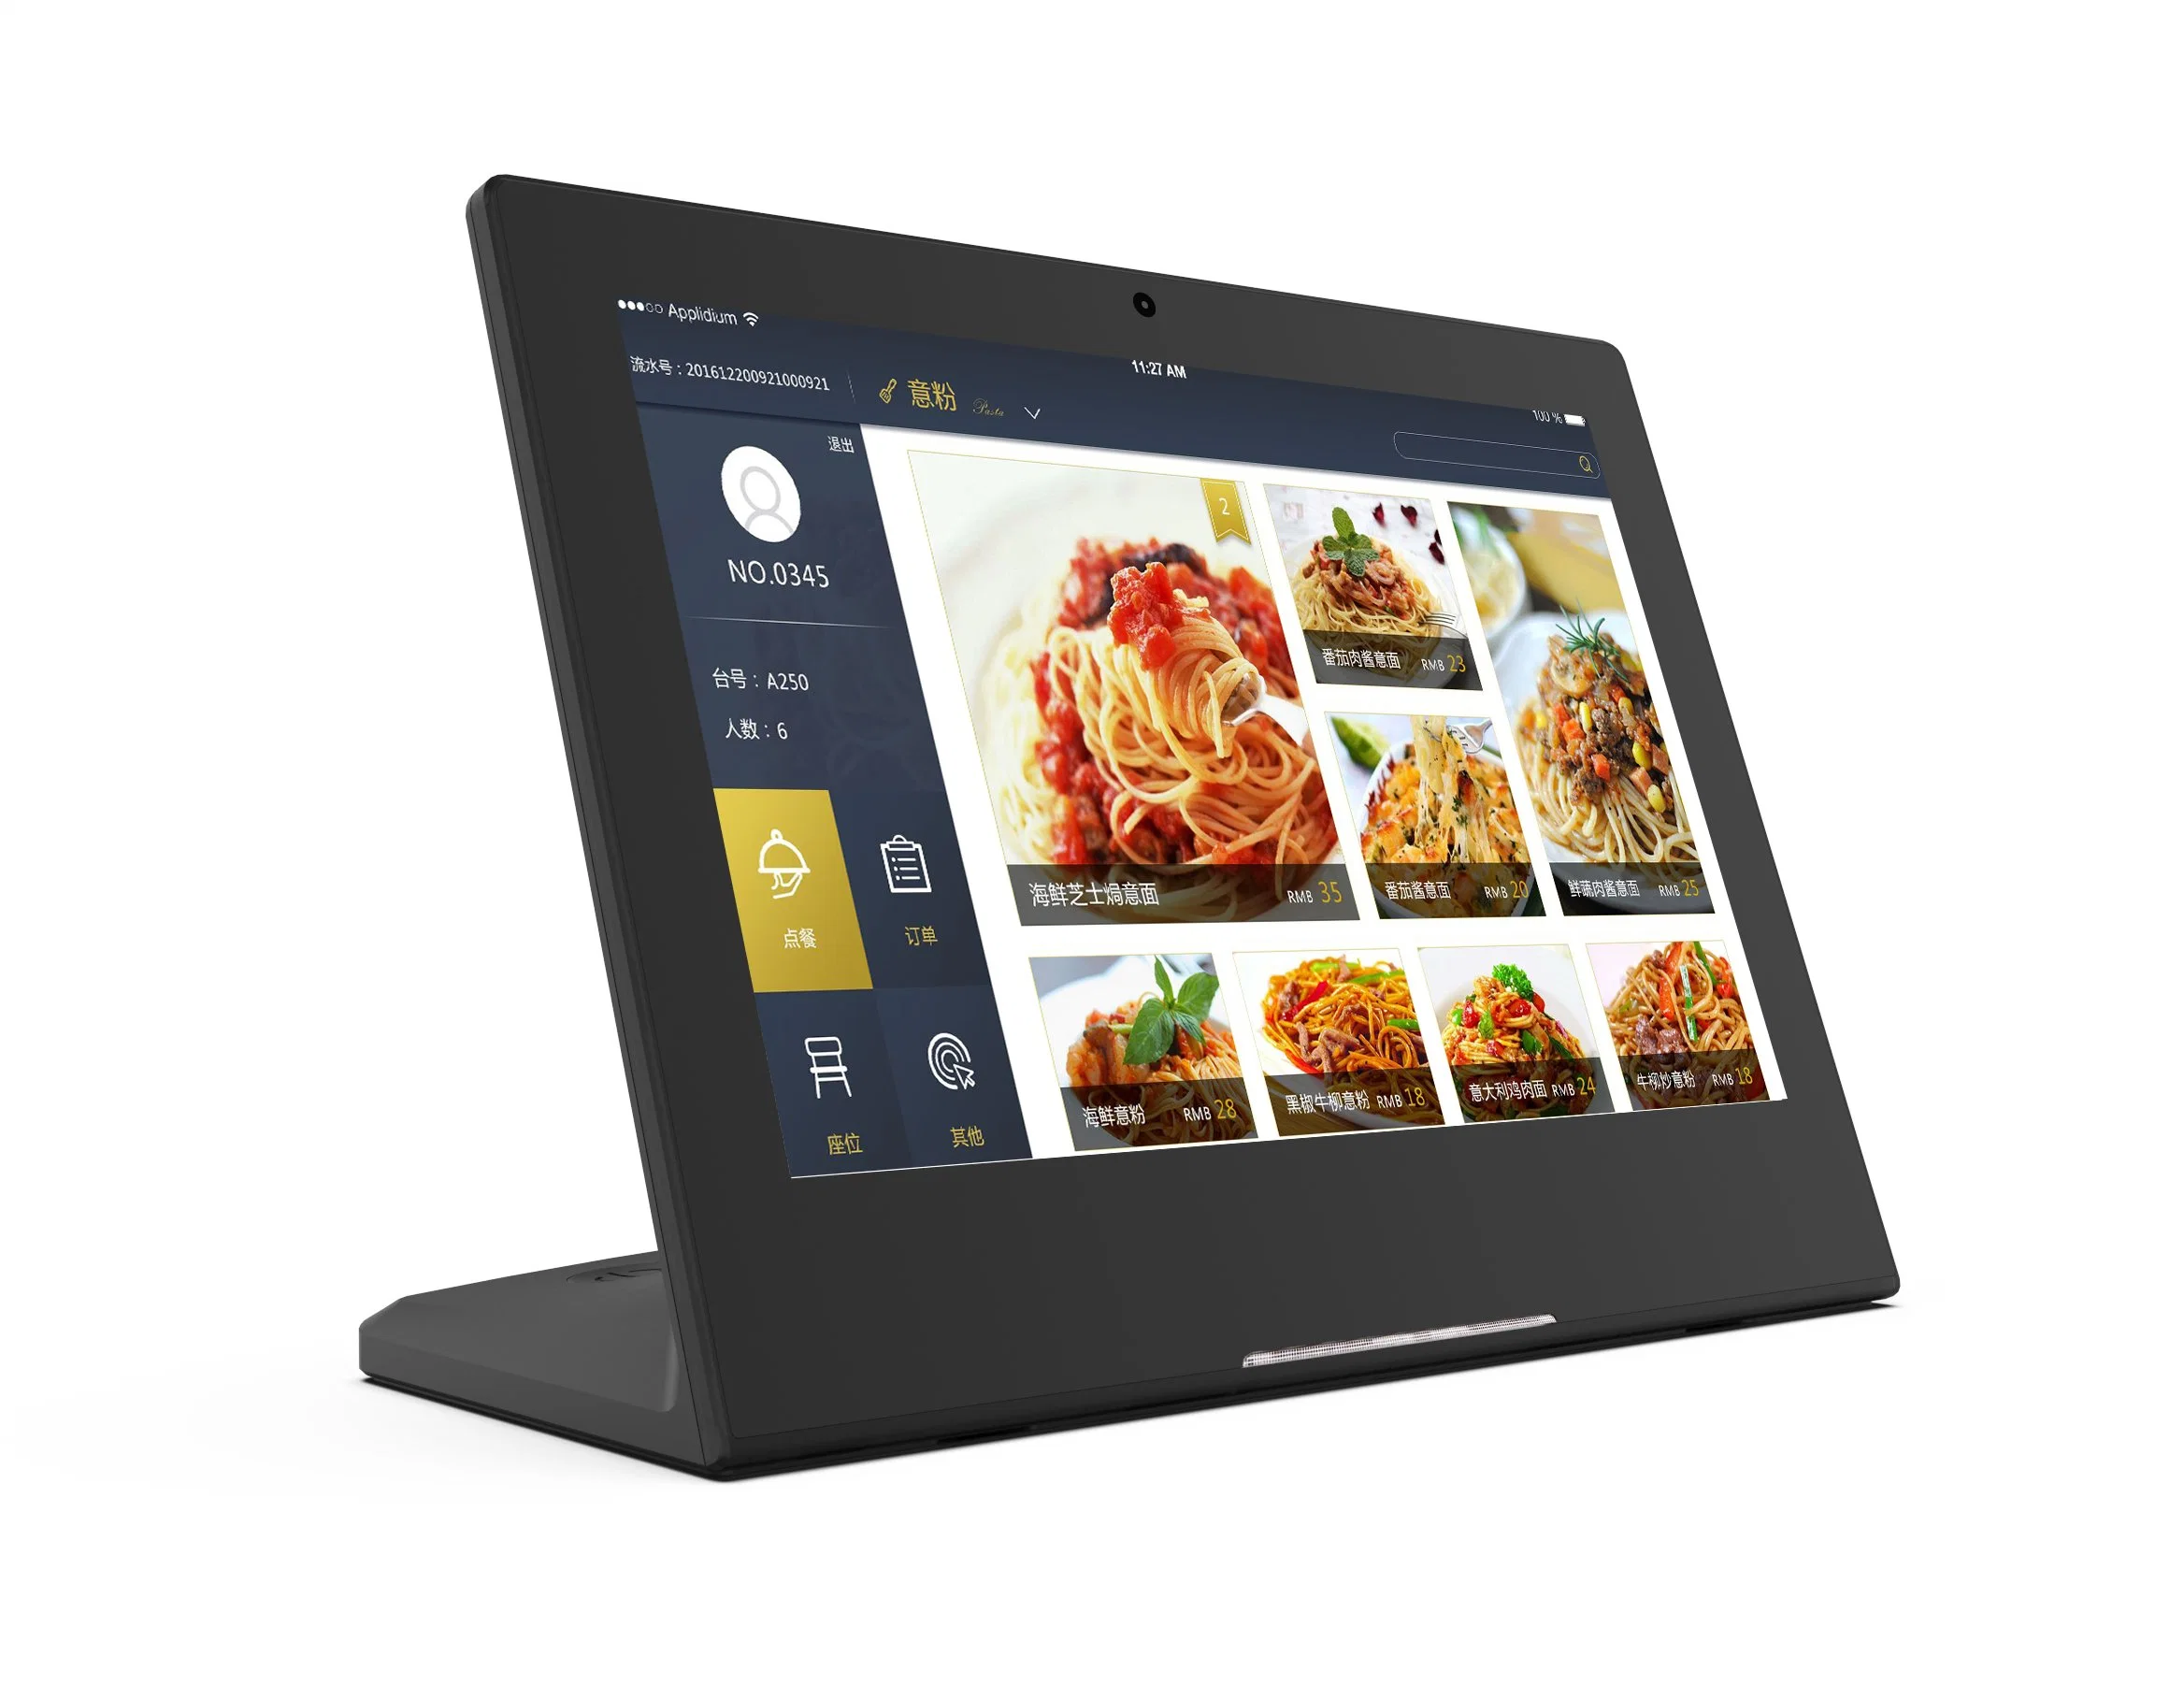 OEM Bulk Großhandel Android Tablet Digital Signage Food Menü Order10 Zoll L Form Android Tablet